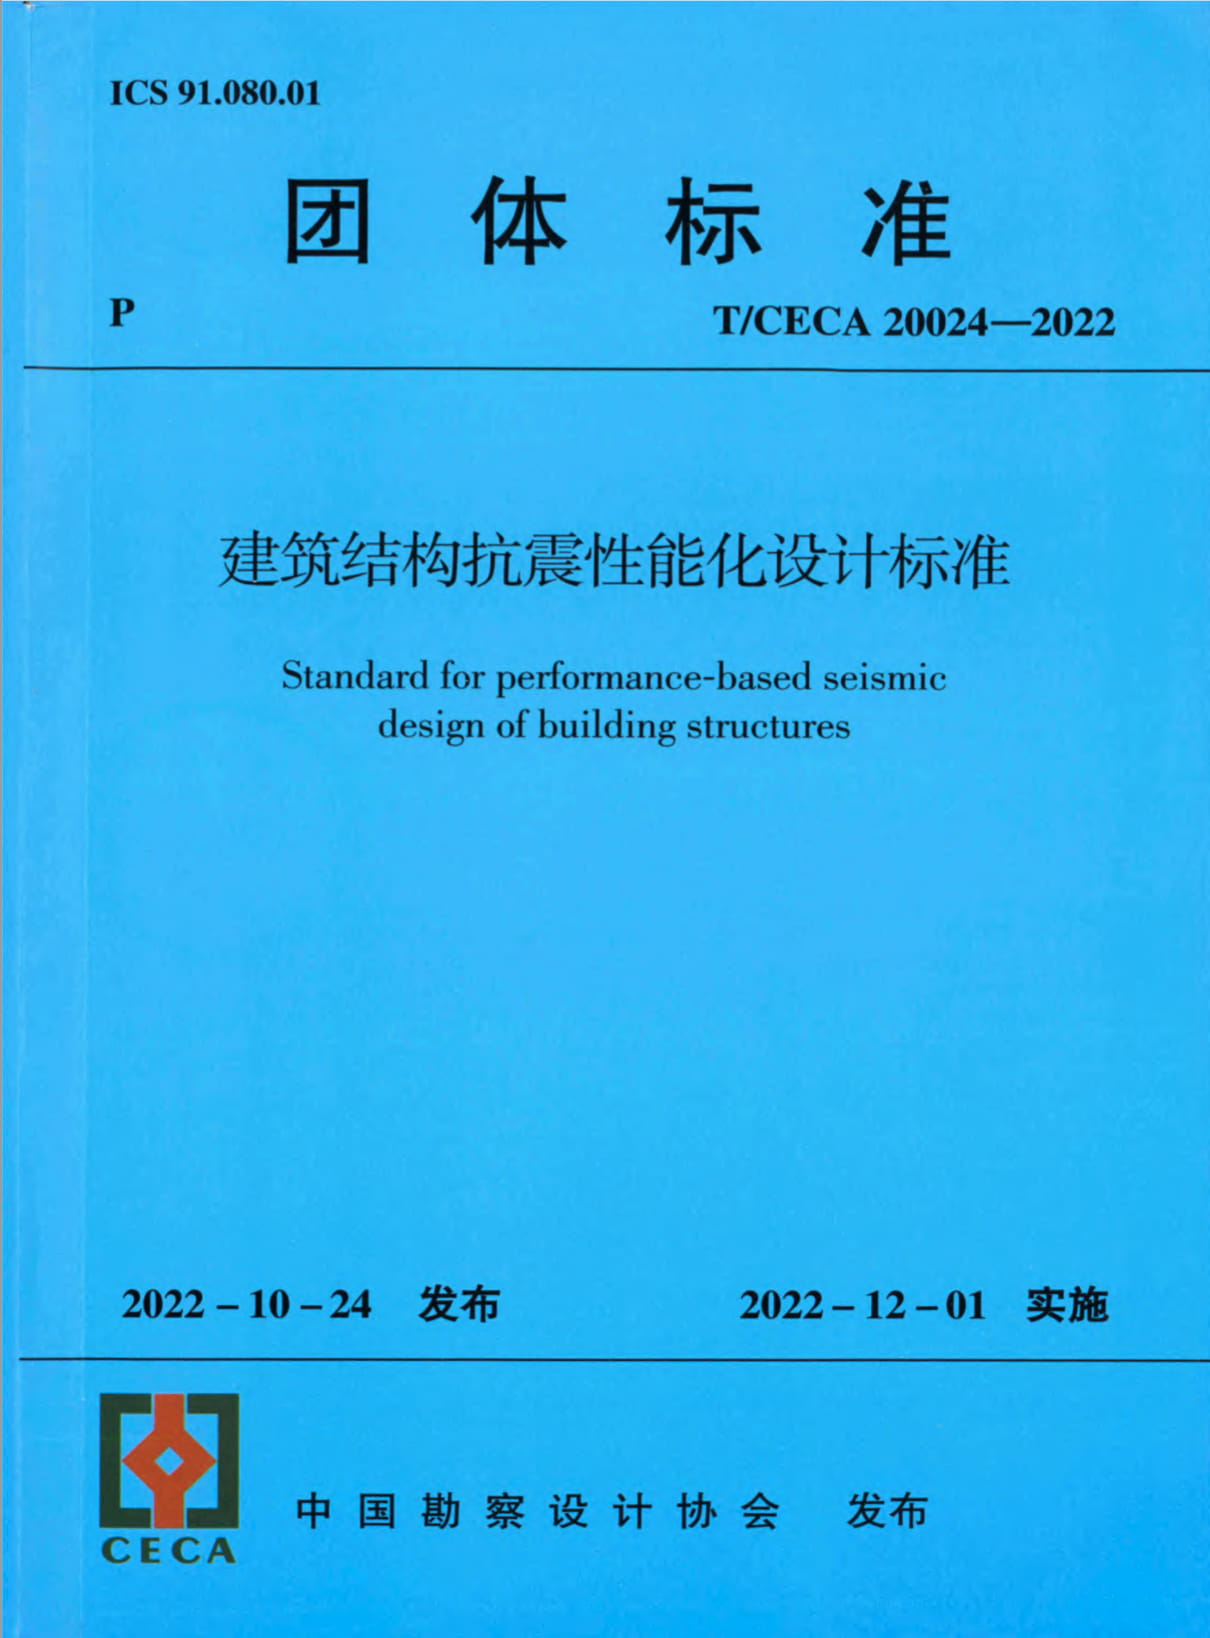 T/CECA 20024-2022 建筑结构抗震性能化设计标准